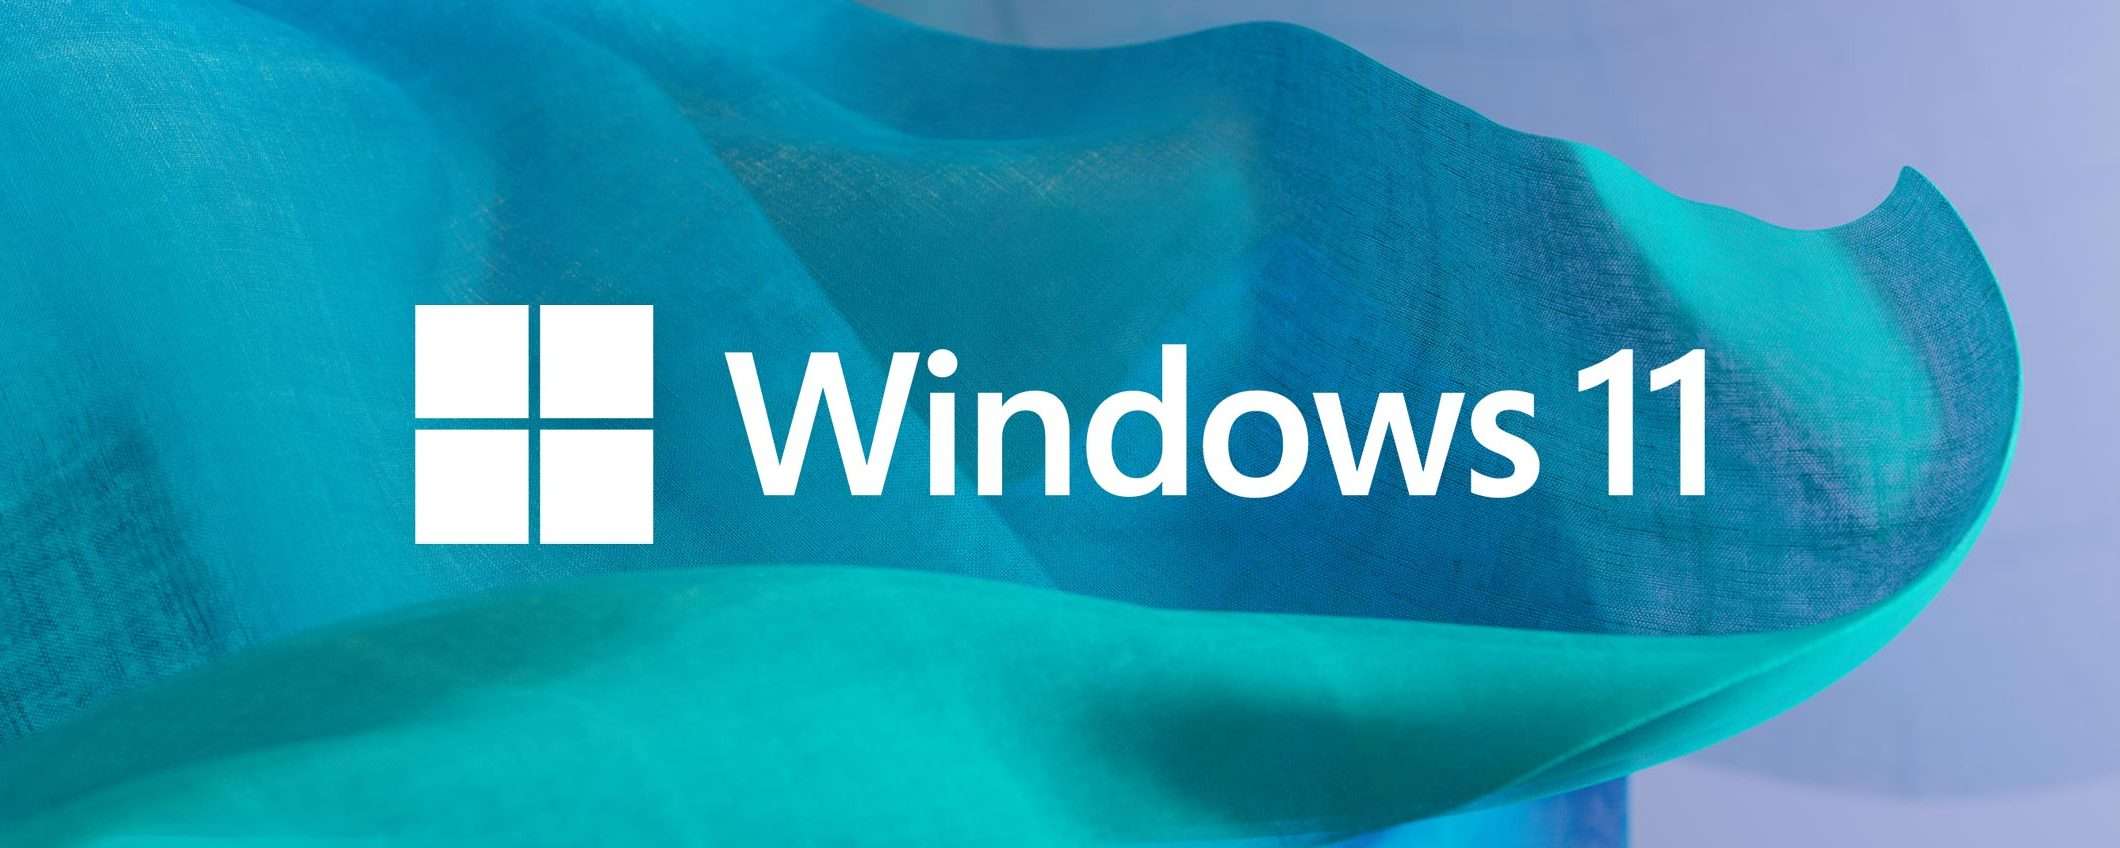 Windows 11: nuove impostazioni per l'efficienza energetica